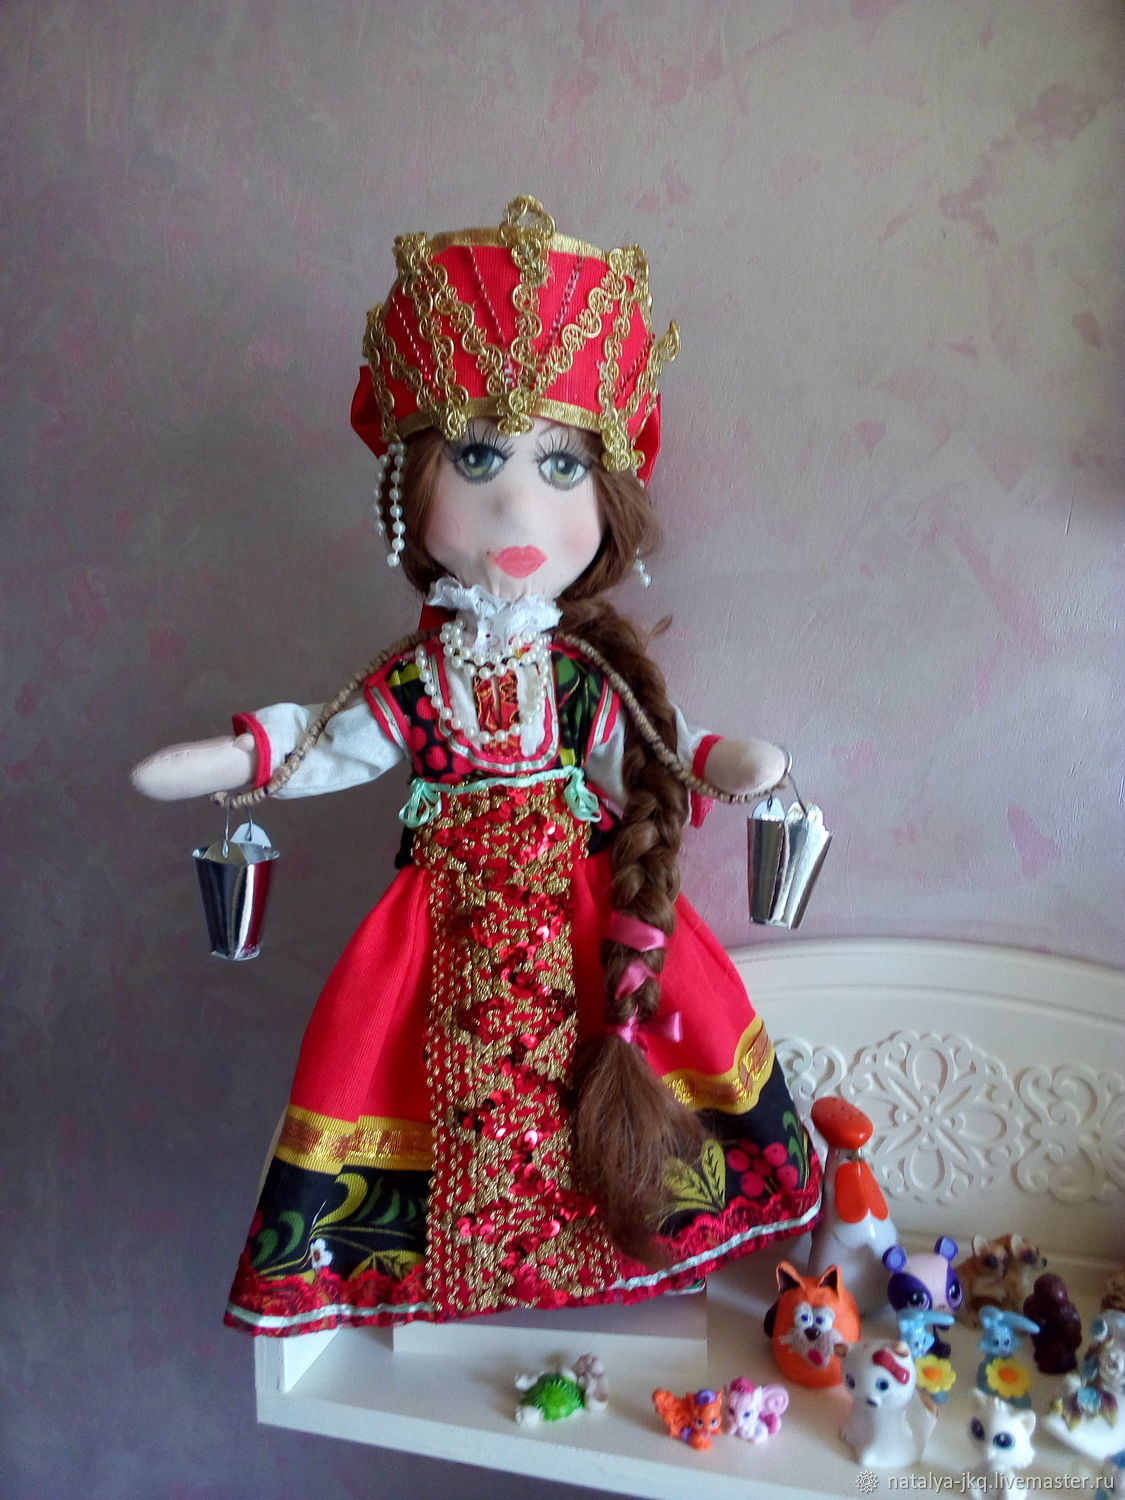 Купить куклу калуга. Кукла Дуняша. Калужская кукла. ПЭФ кукла Дуняша. Калужская кукла гамаюнка.